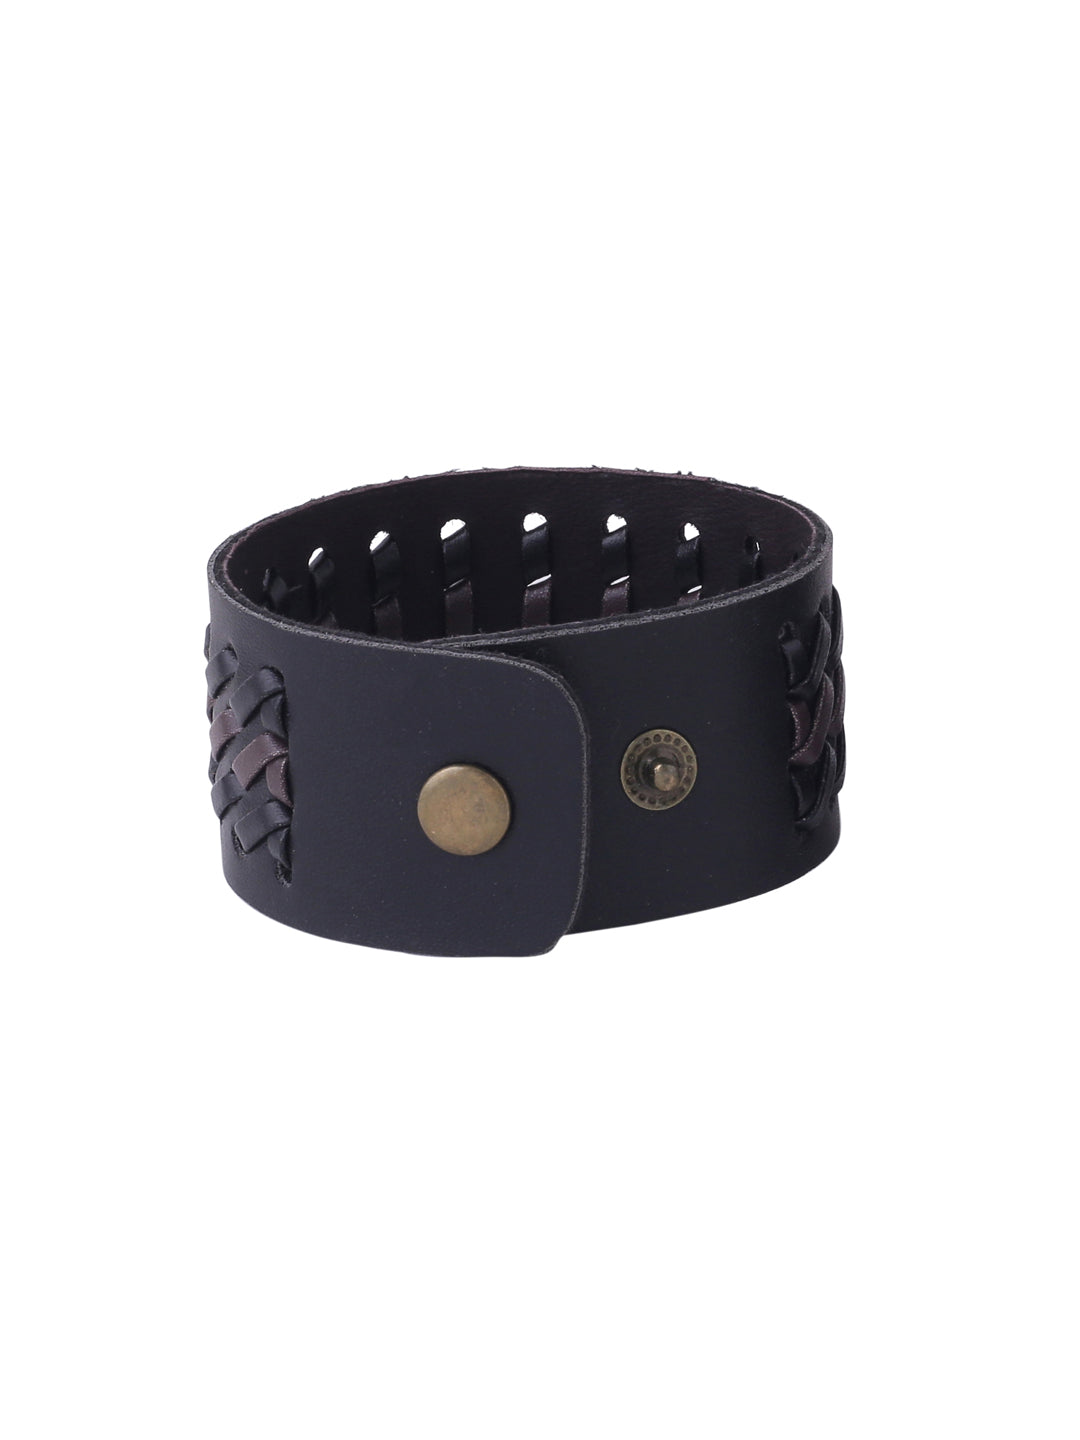 Men's Set Of 2 Black Leather Bracelet - Nvr